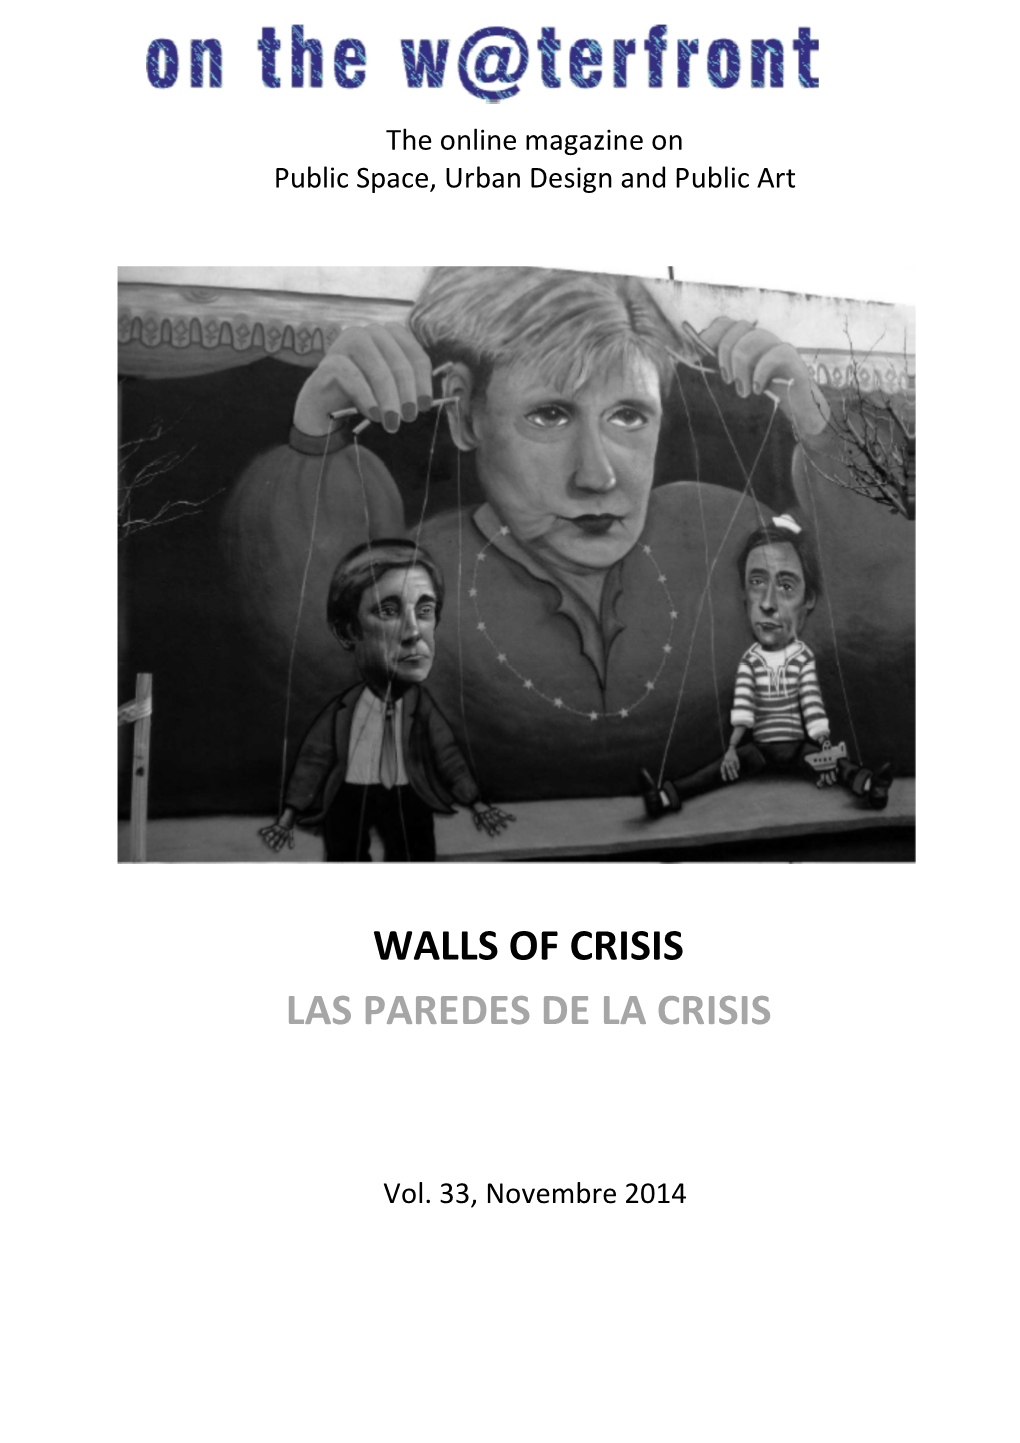 Walls of Crisis Las Paredes De La Crisis